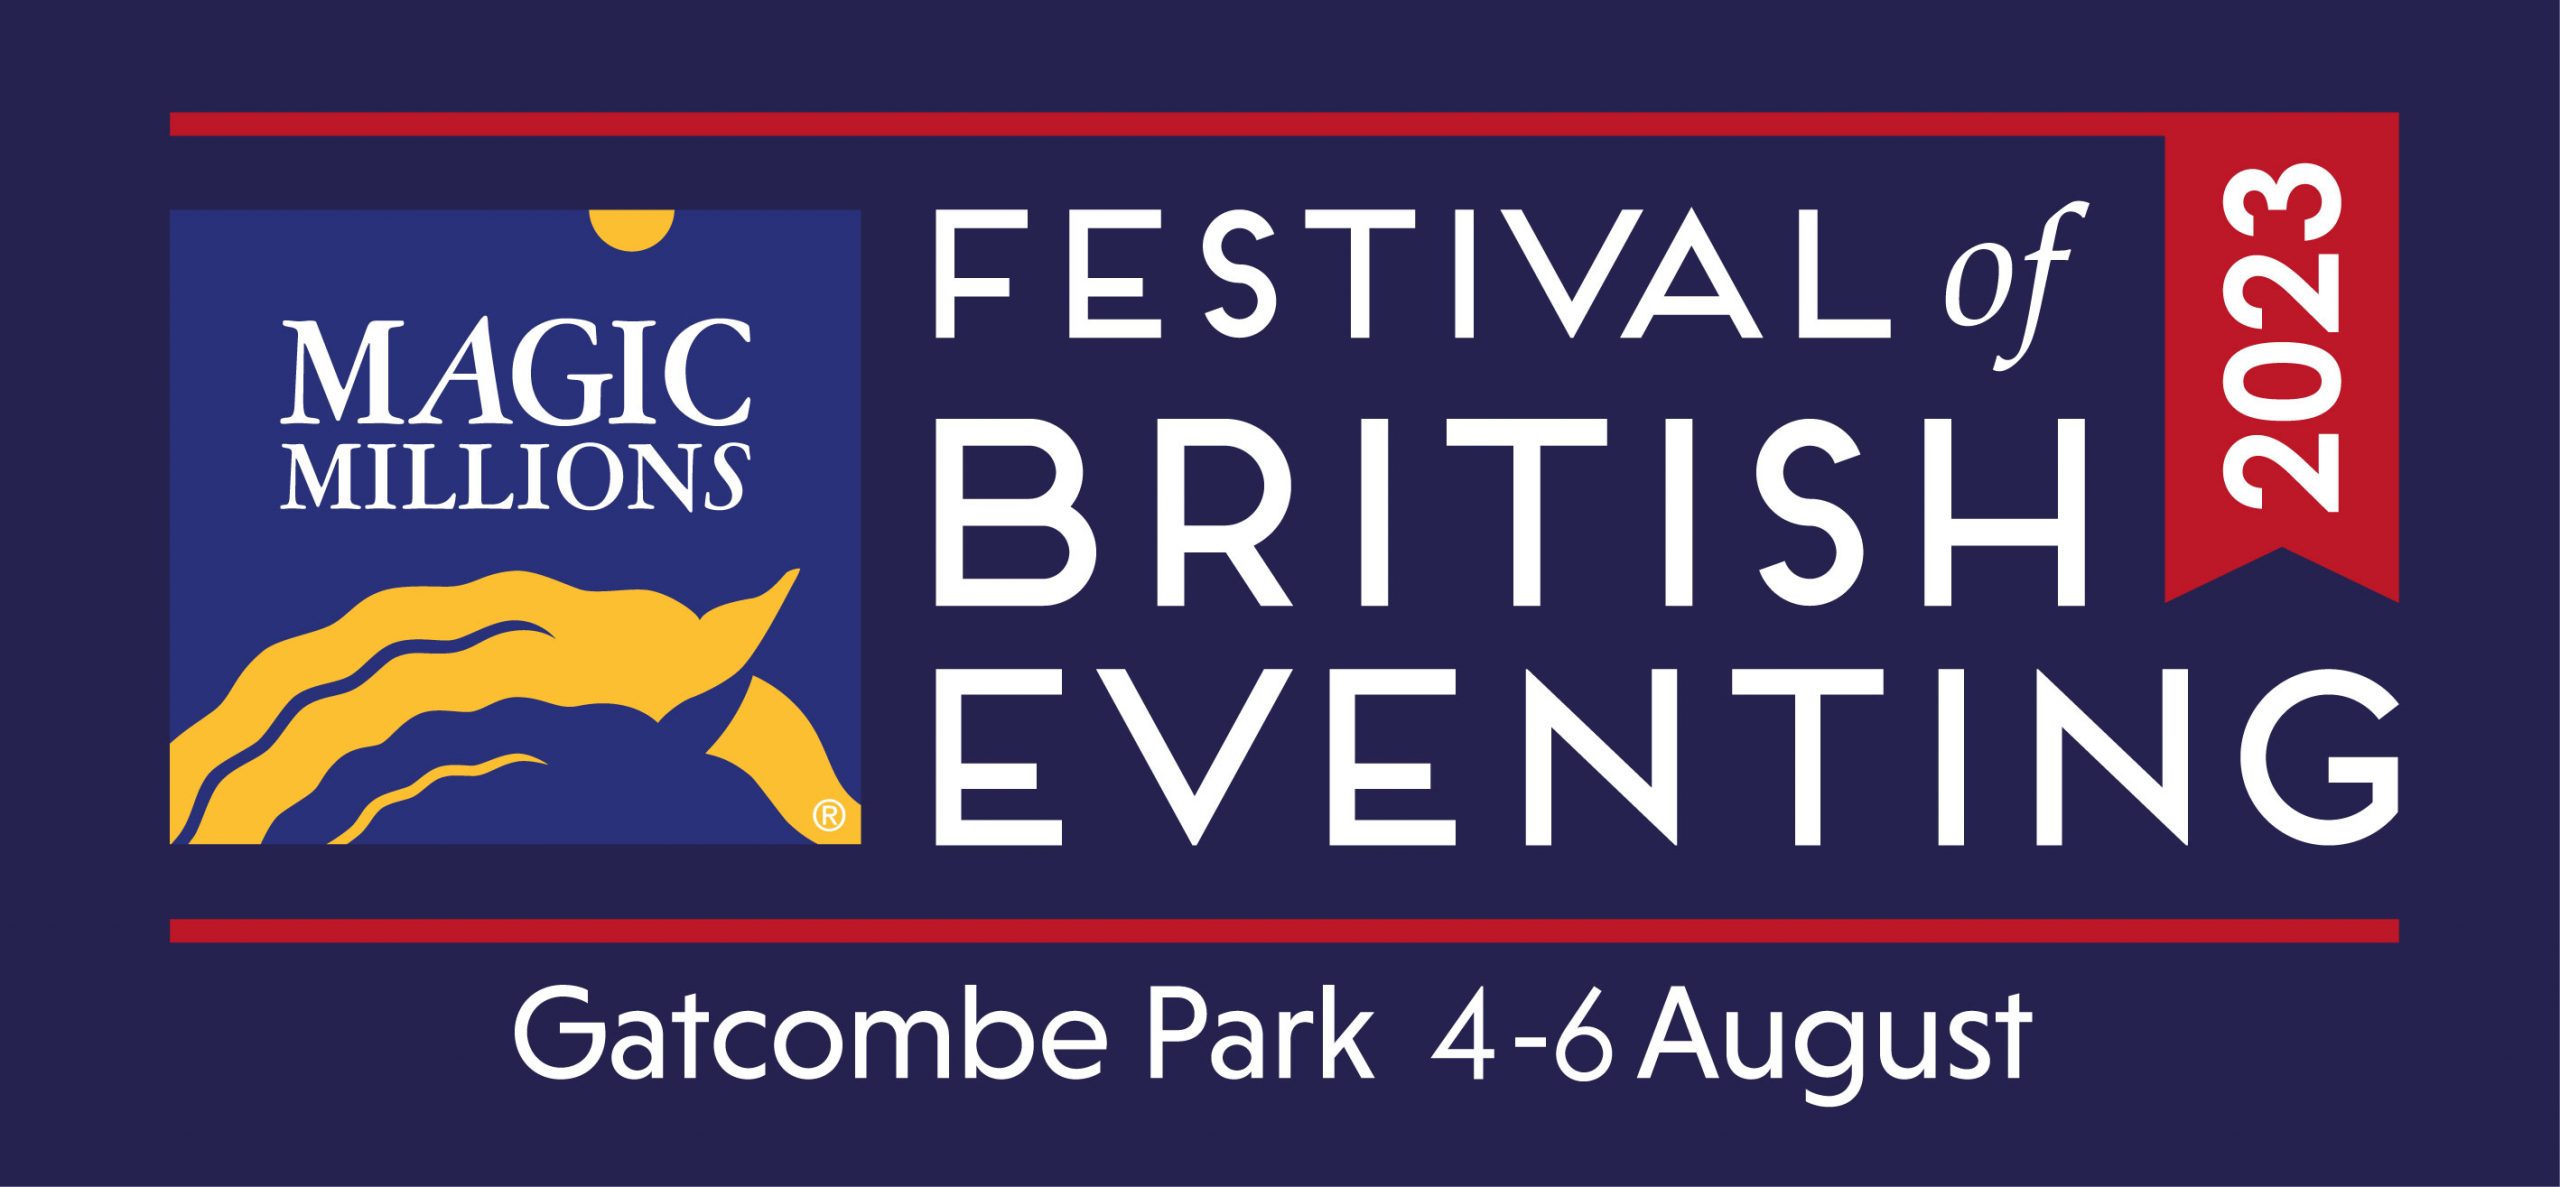 Festival of British Eventing